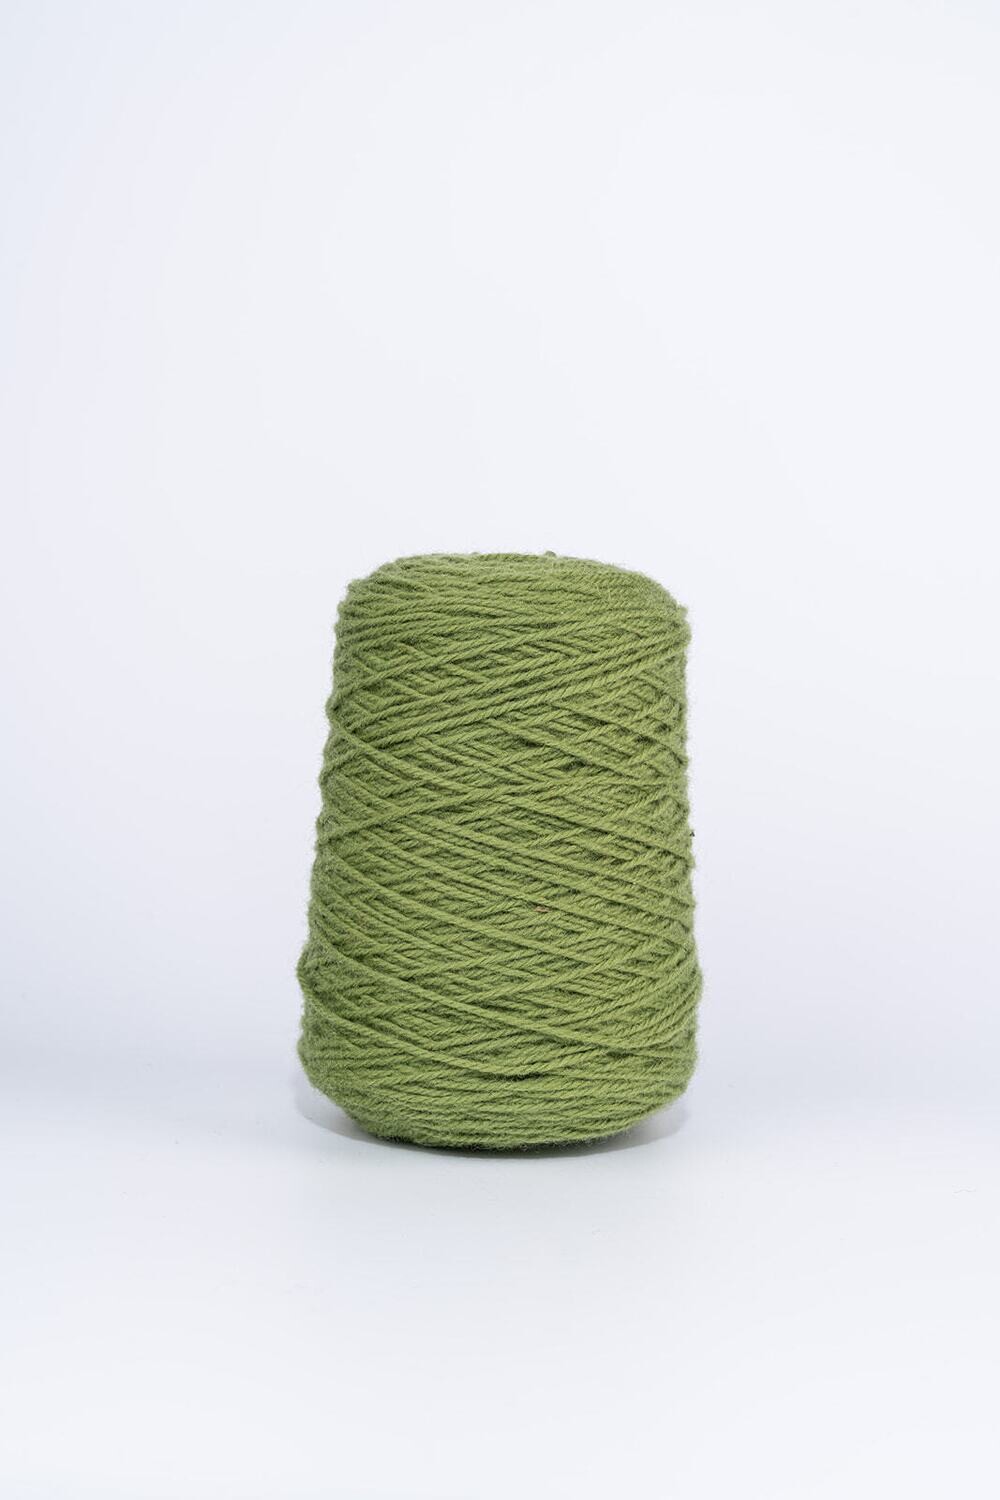 100% Wool Rug Yarn On Cones - Moss Green